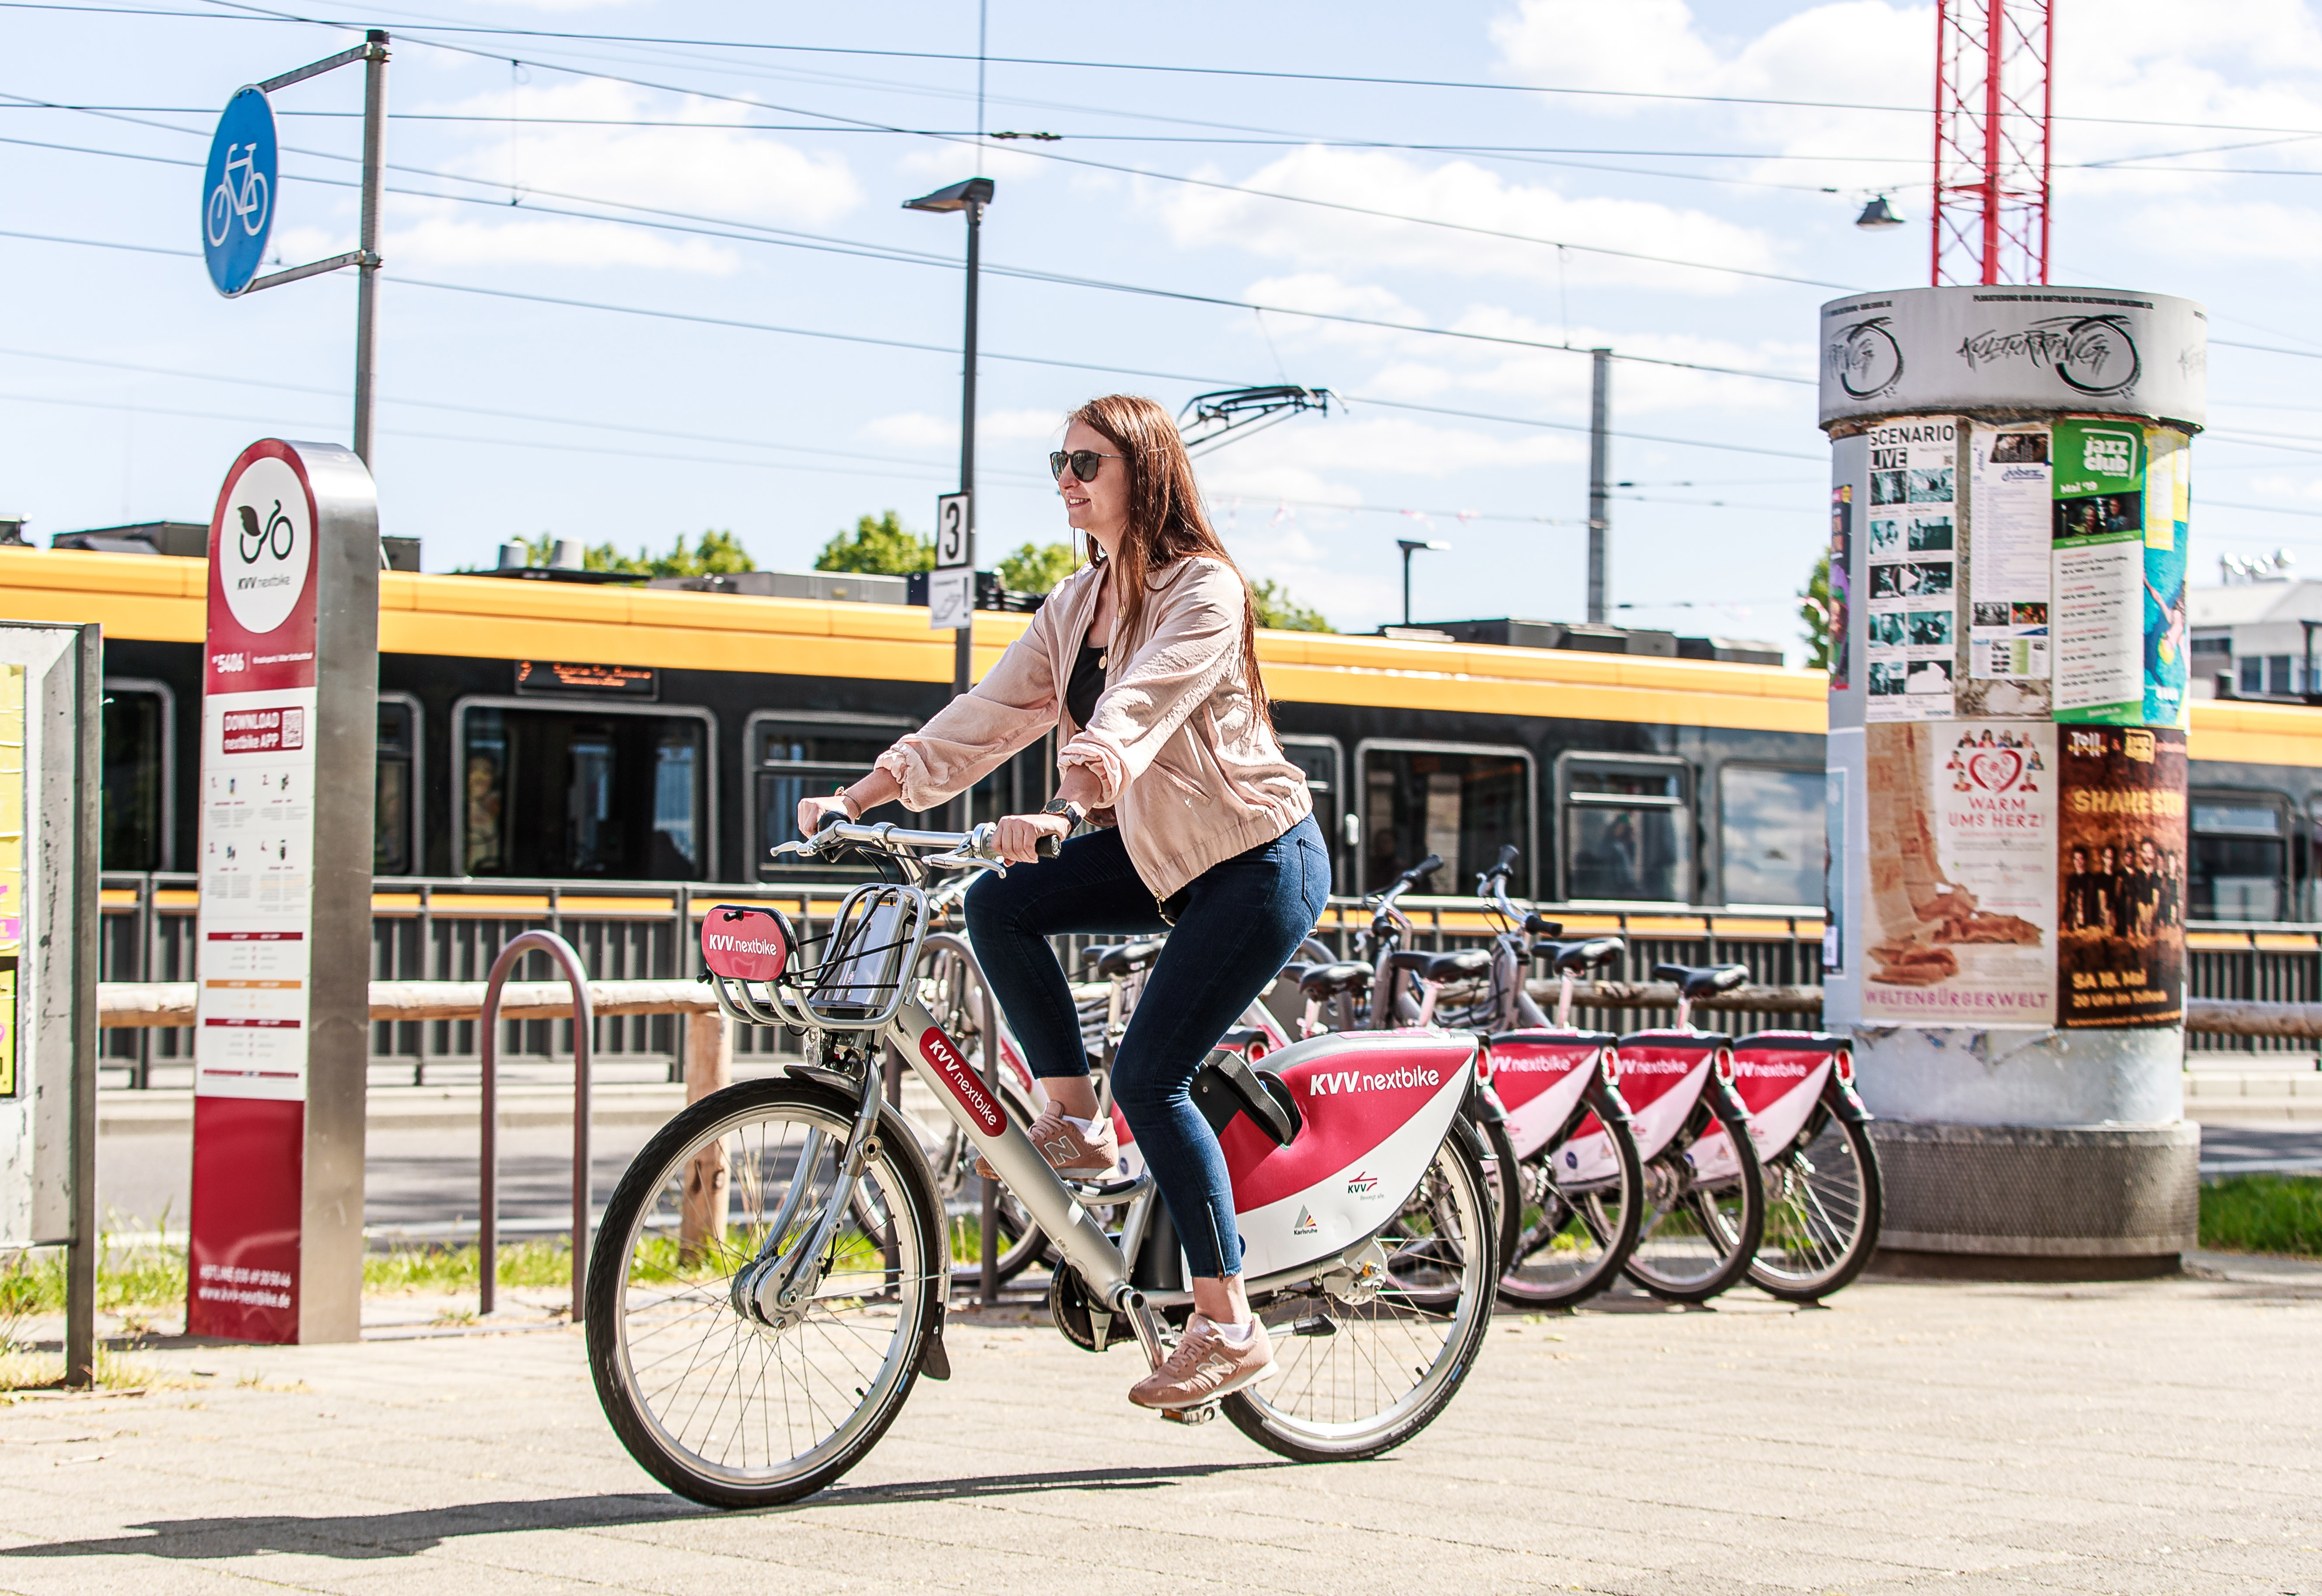 Brunette Frau fährt auf einem Fahrrad der Firma nextbike. Im Hintergrund sind weitere Fahrräder und eine gelbe Straßenbahn zu sehen. Der Himmel ist blau und leicht bewölkt.